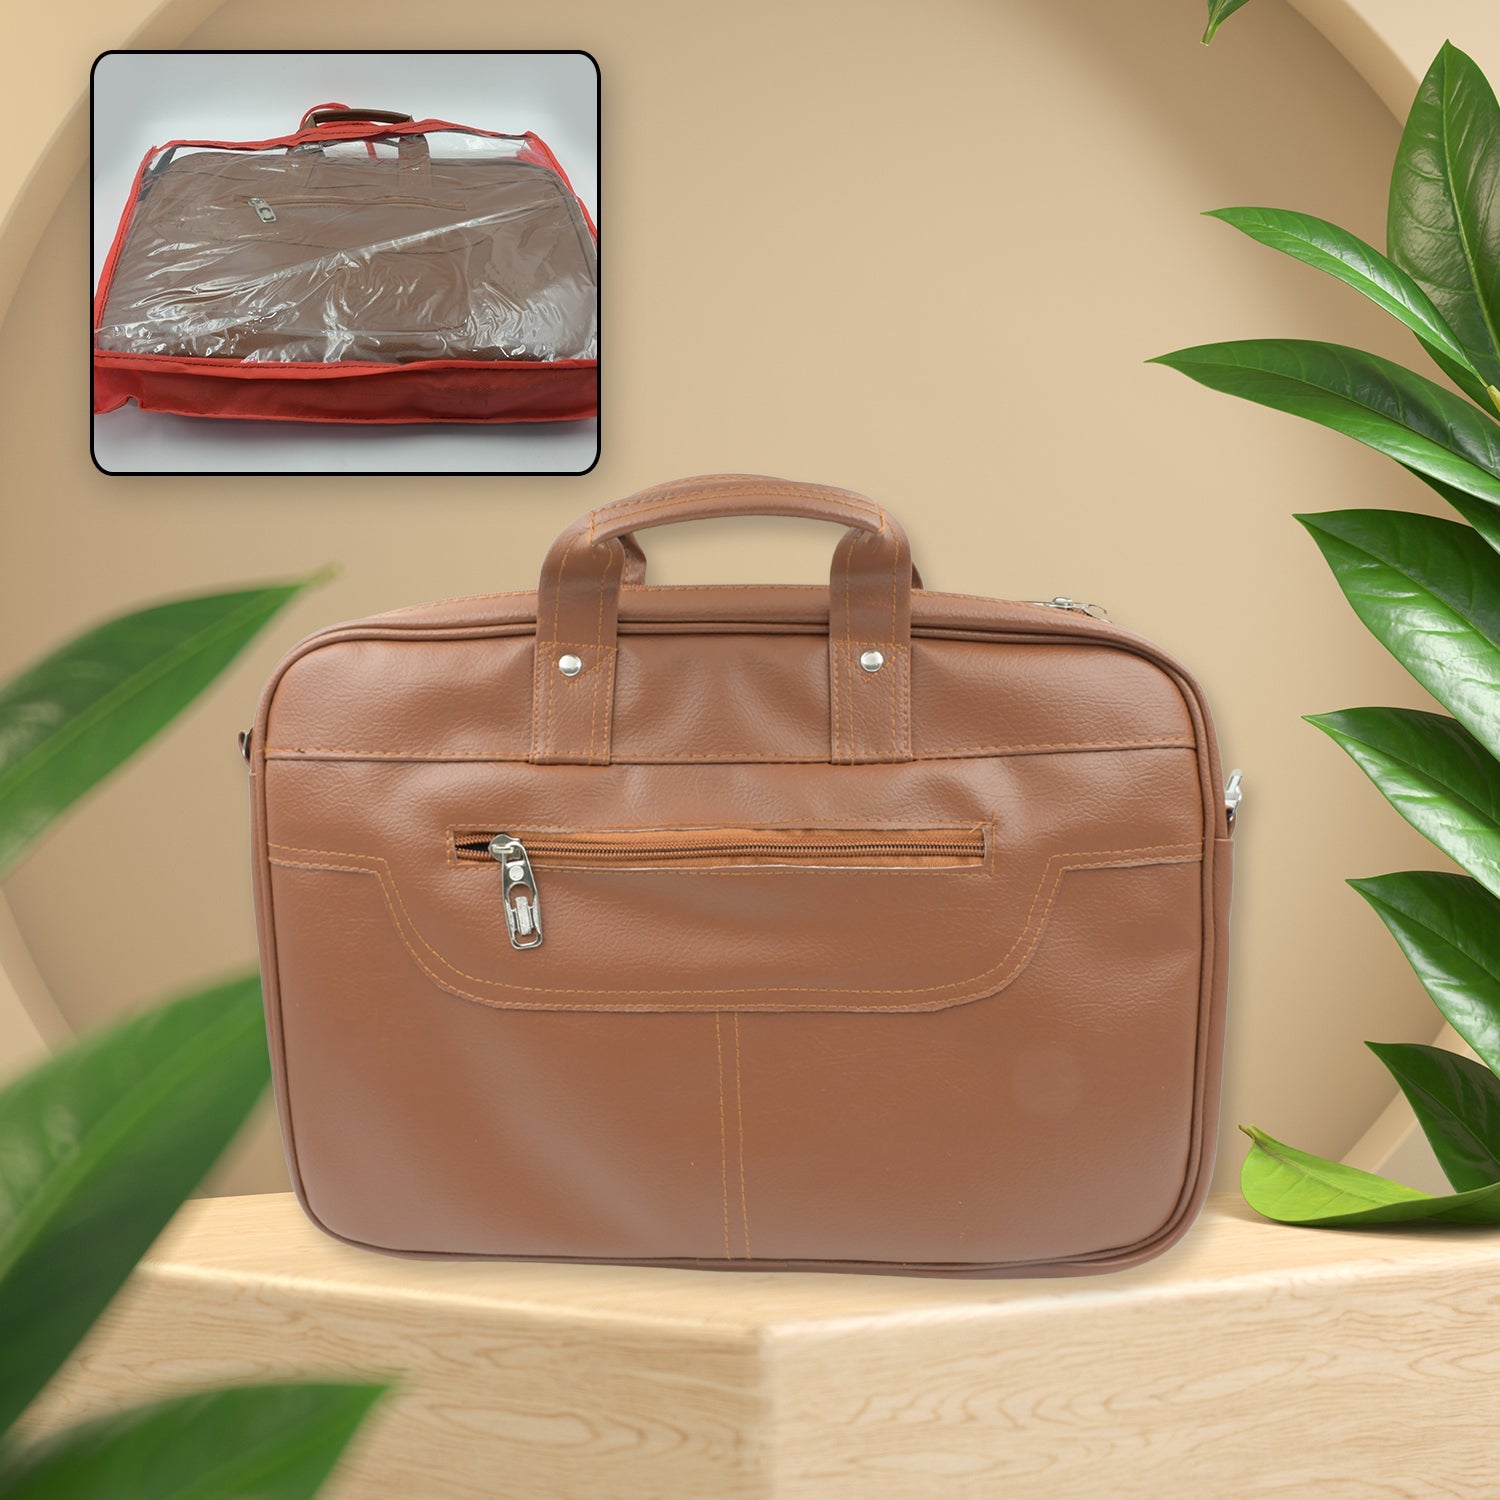 12573 Multipurpose Bag, Shoulder Side Bag Office Laptop Faux Leather Executive Formal Laptop & MacBook Messenger / Office / Travel / Business / Shoulder / Hand / Sling Bag for Men Women with Multiple compartments